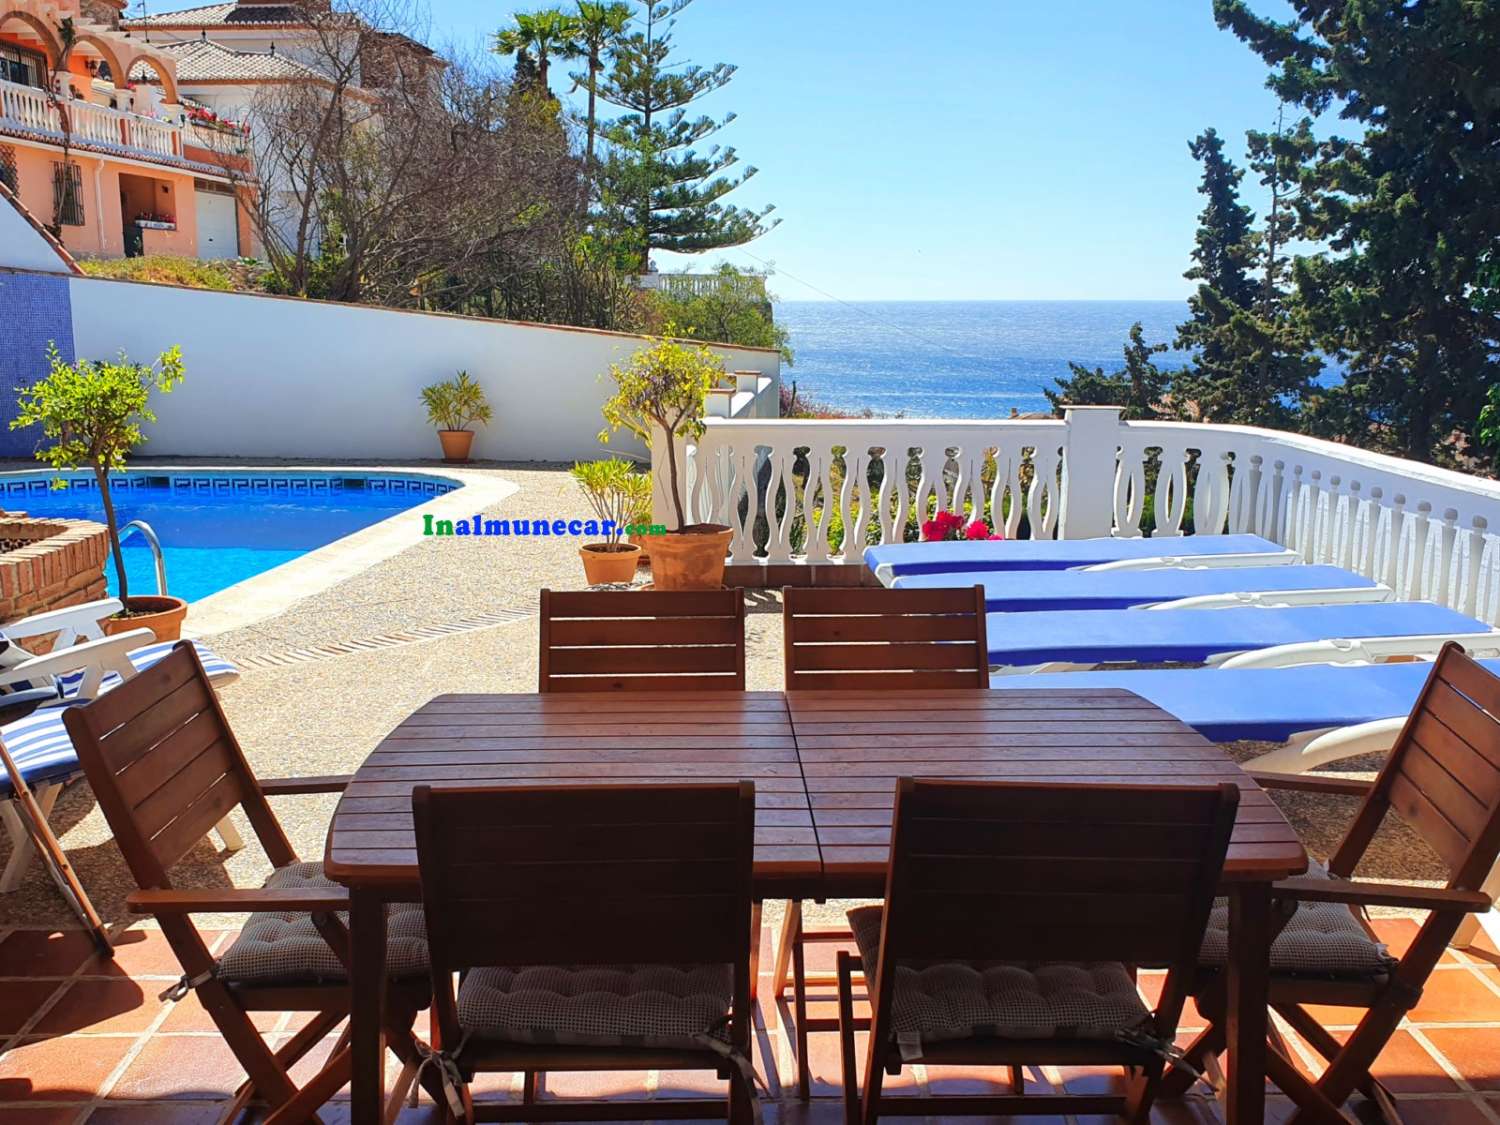 Villa en venta en Almuñécar con vistas fantásticas, jardín y garaje – cerca de la playa y restaurantes